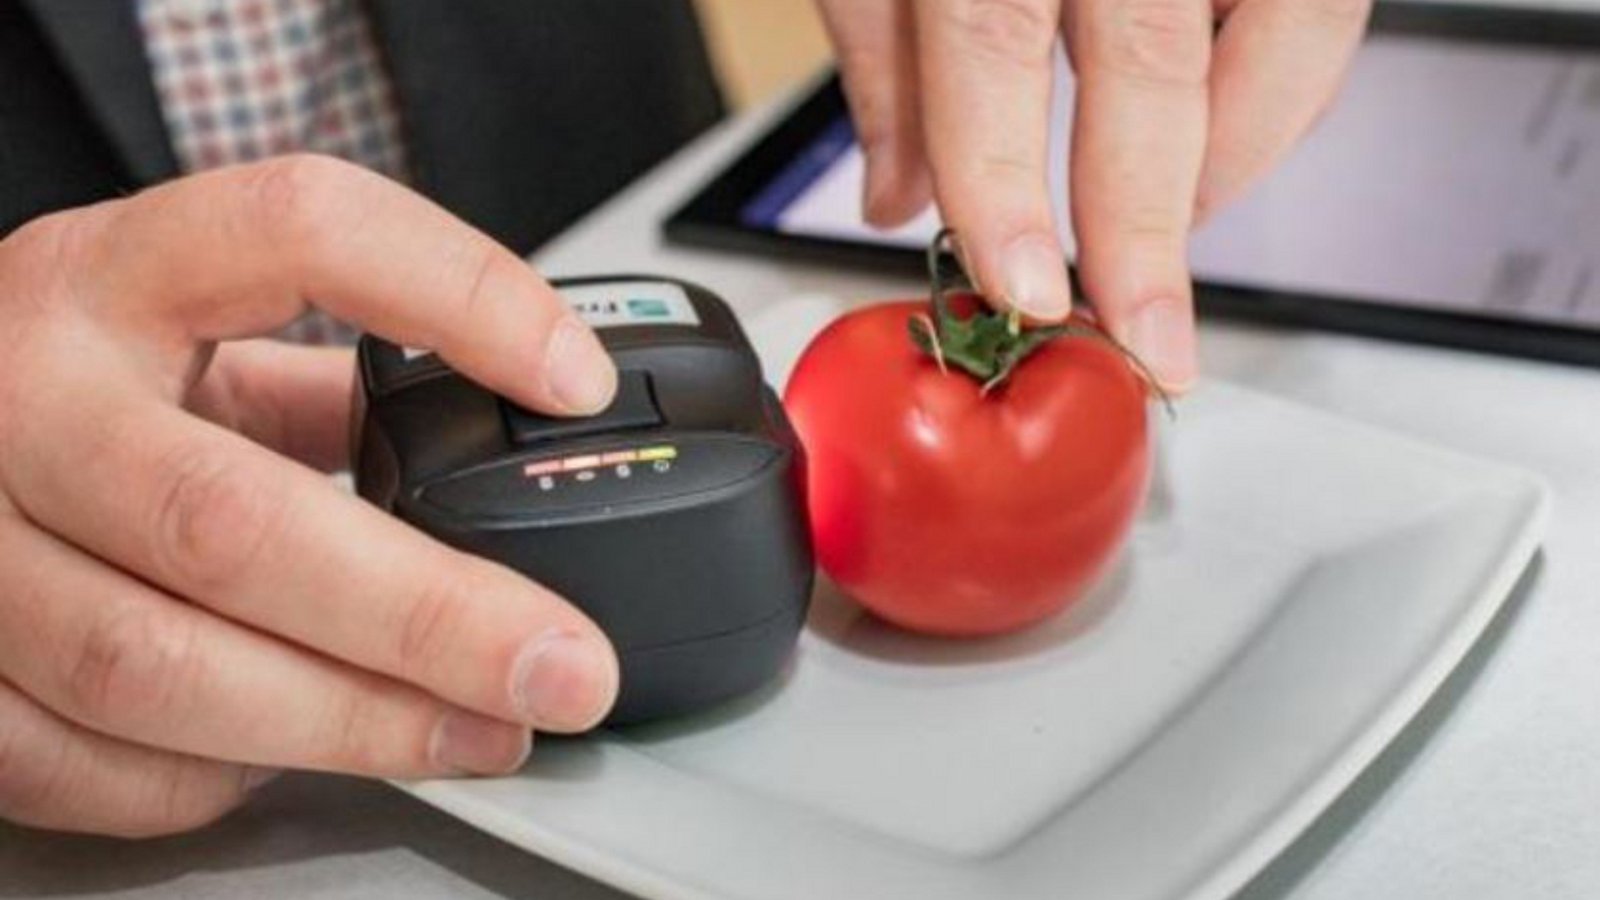 An eine Tomate wird ein kleiner Foodscanner gehalten.